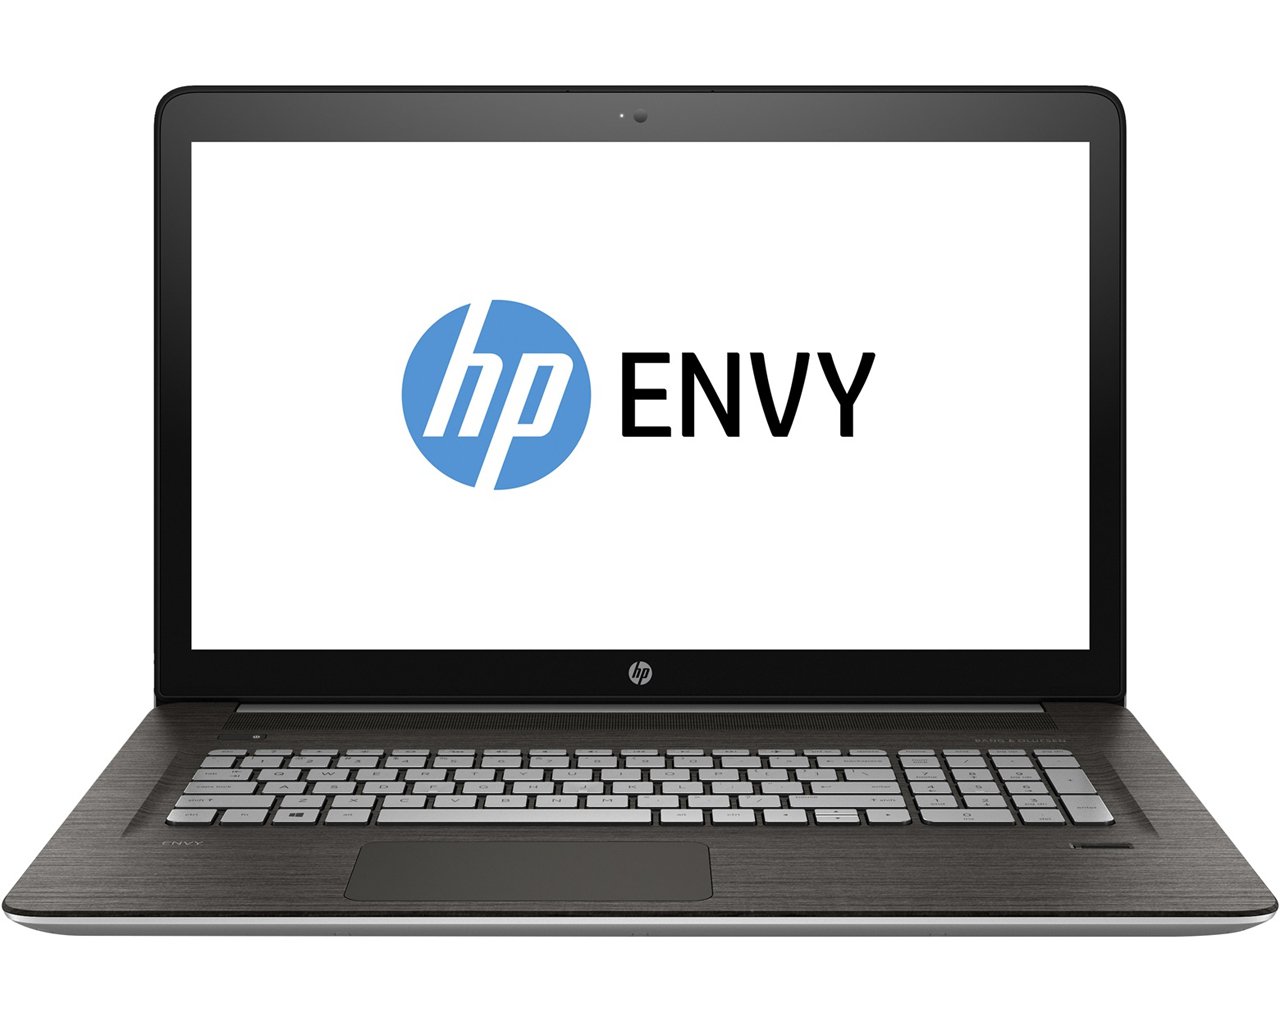 HP Envy 17-r102ur - ноутбук с 3D-камерой